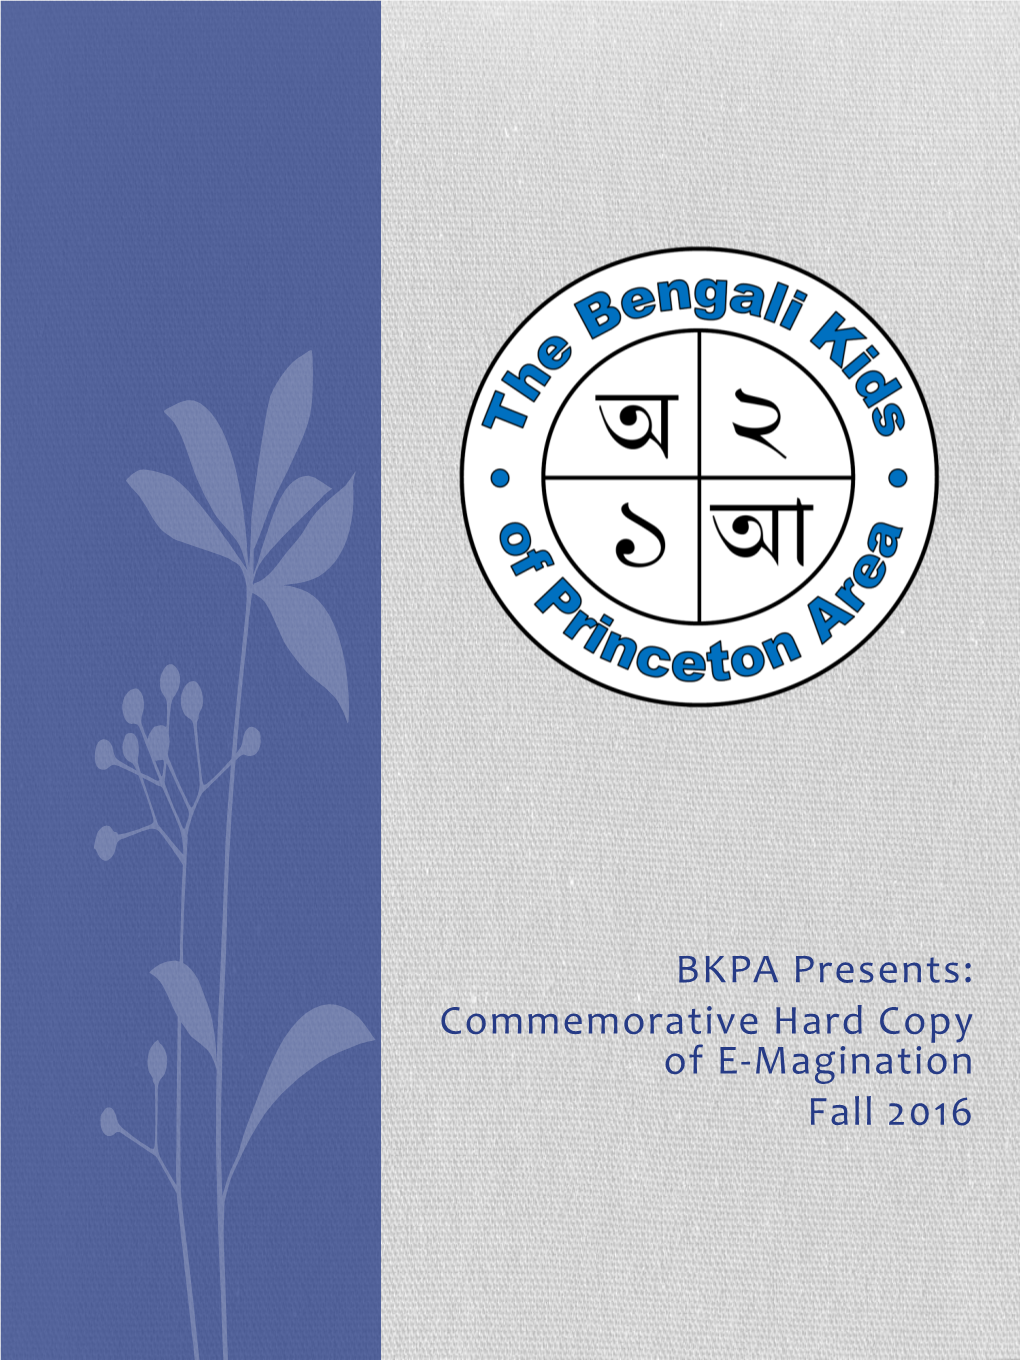 BKPA Presents: Commemorative Hard Copy of E-Magination Fall 2016